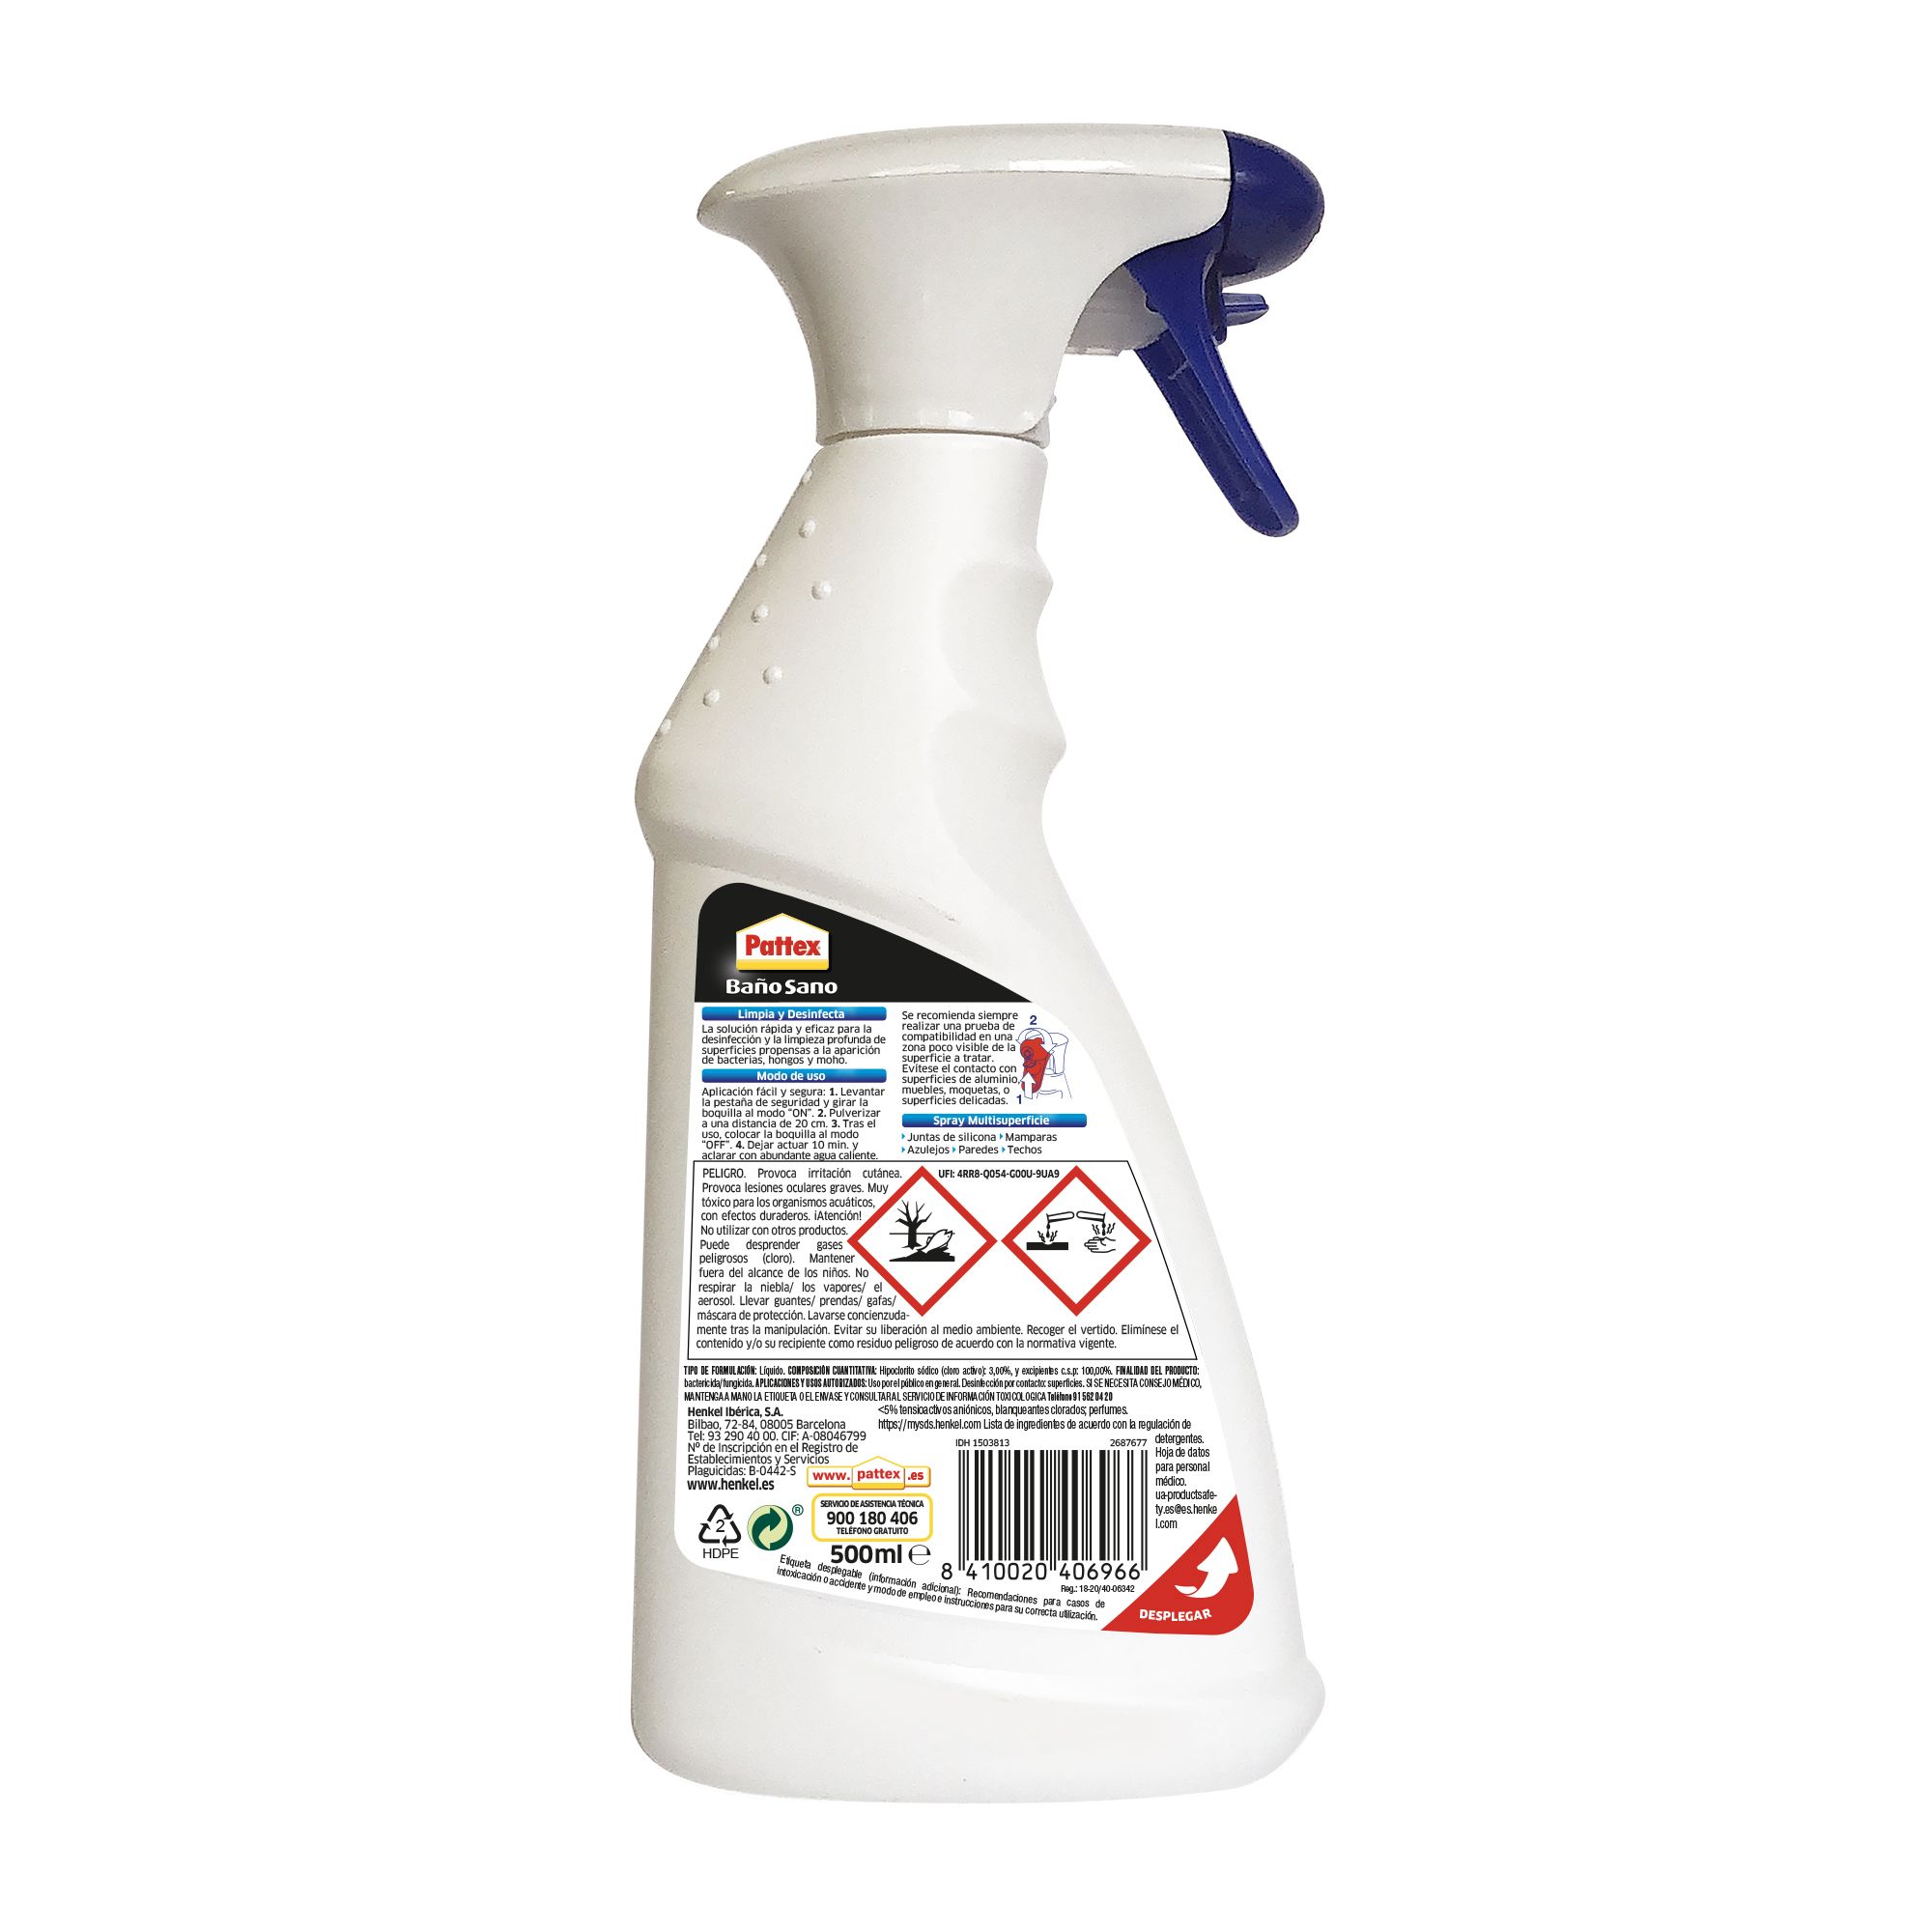 Lote Exclusivo de Spray Antimoho BAUFIX y Pintura Correctora Blanca -  Solución Completa contra el Moho - España, Outlet - Plataforma mayorista